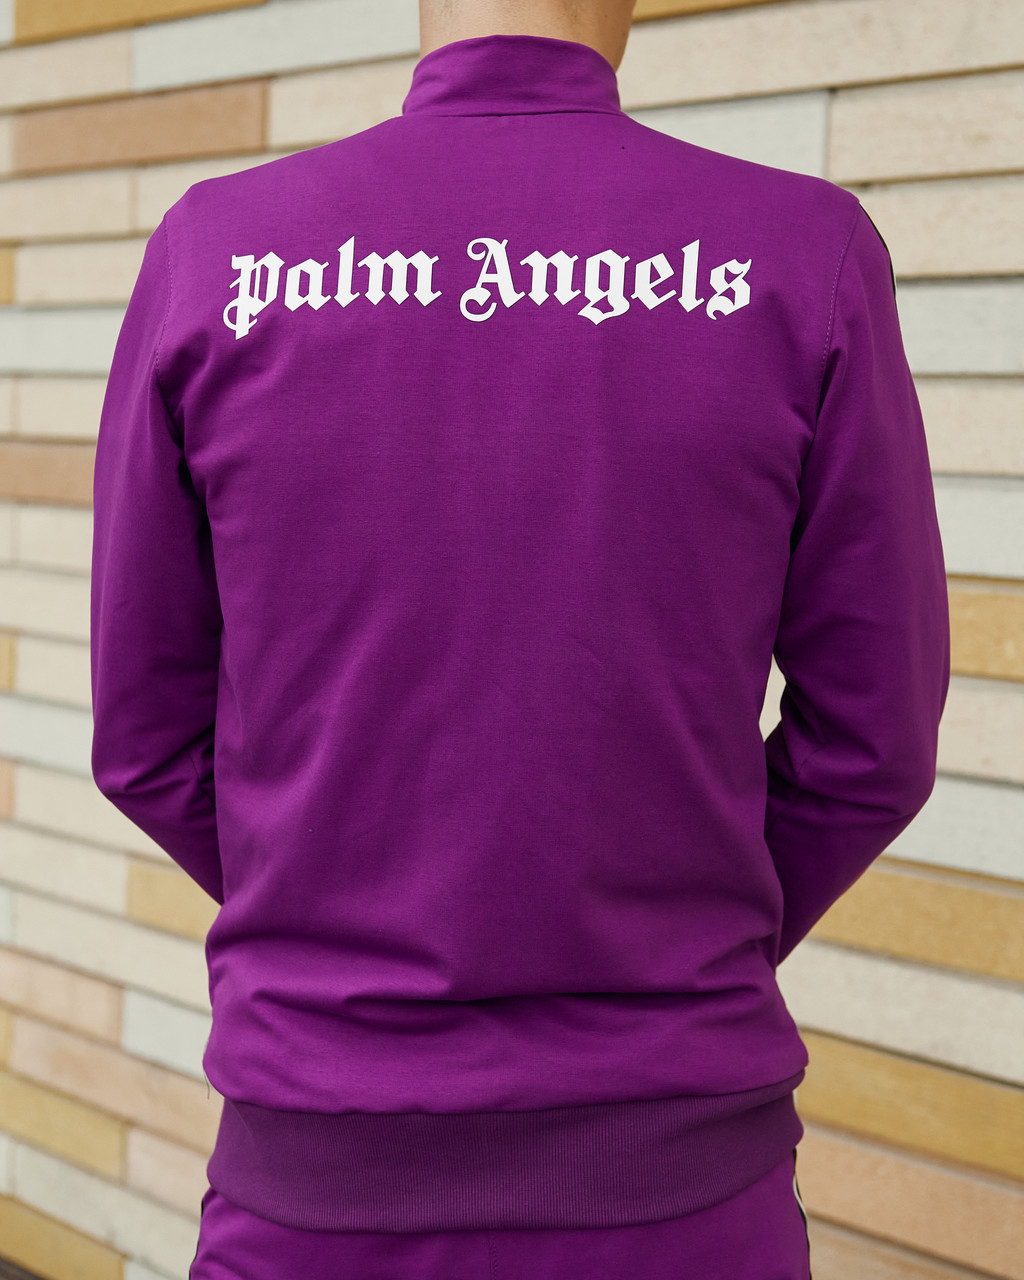 Олимпийка мужская в стиле Palm Angels фиолетовая Пушка Огонь - Фото 6